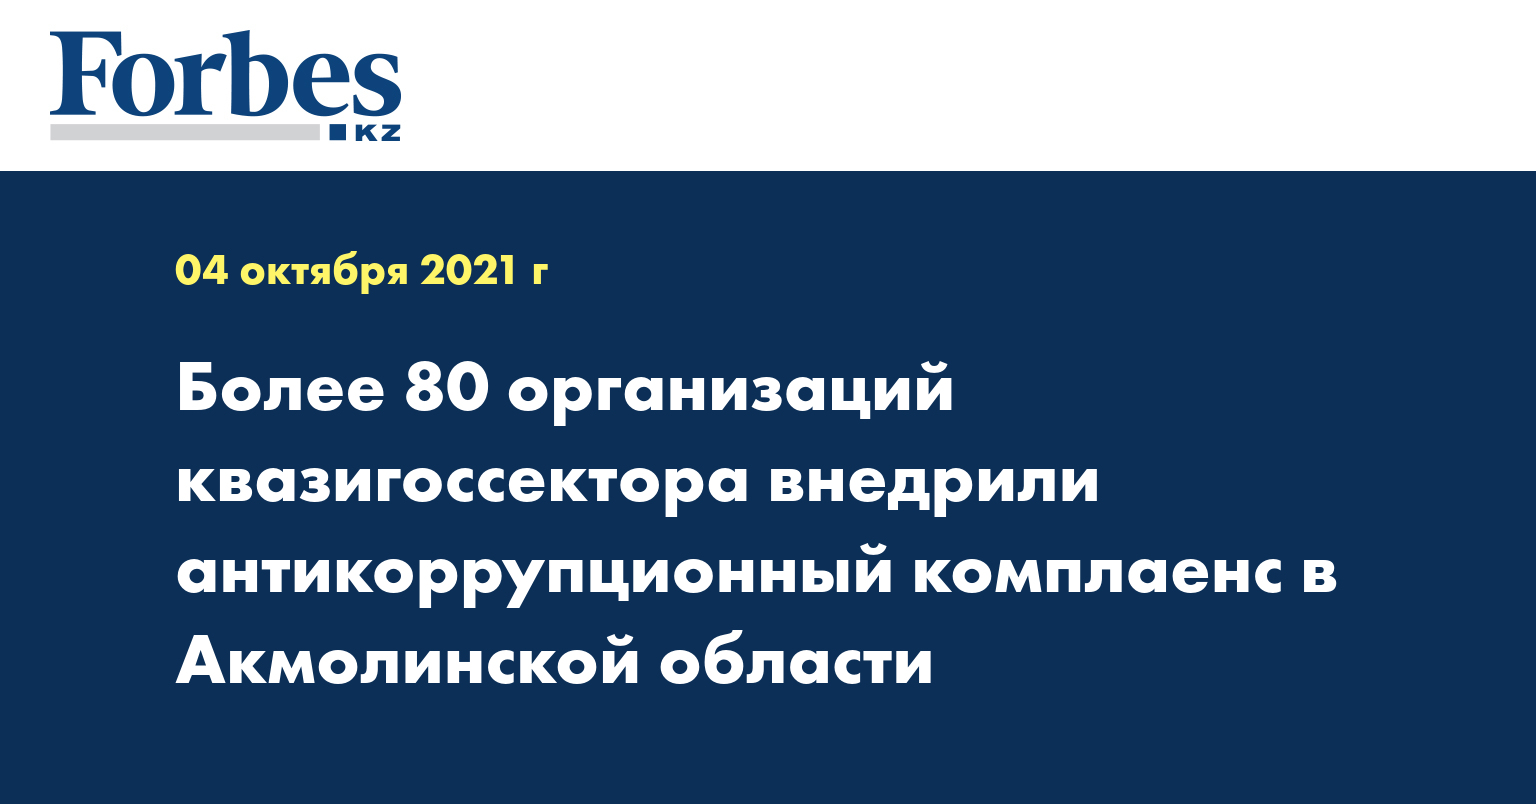  Более 80 организаций квазигоссектора внедрили антикоррупционный комплаенс в Акмолинской области